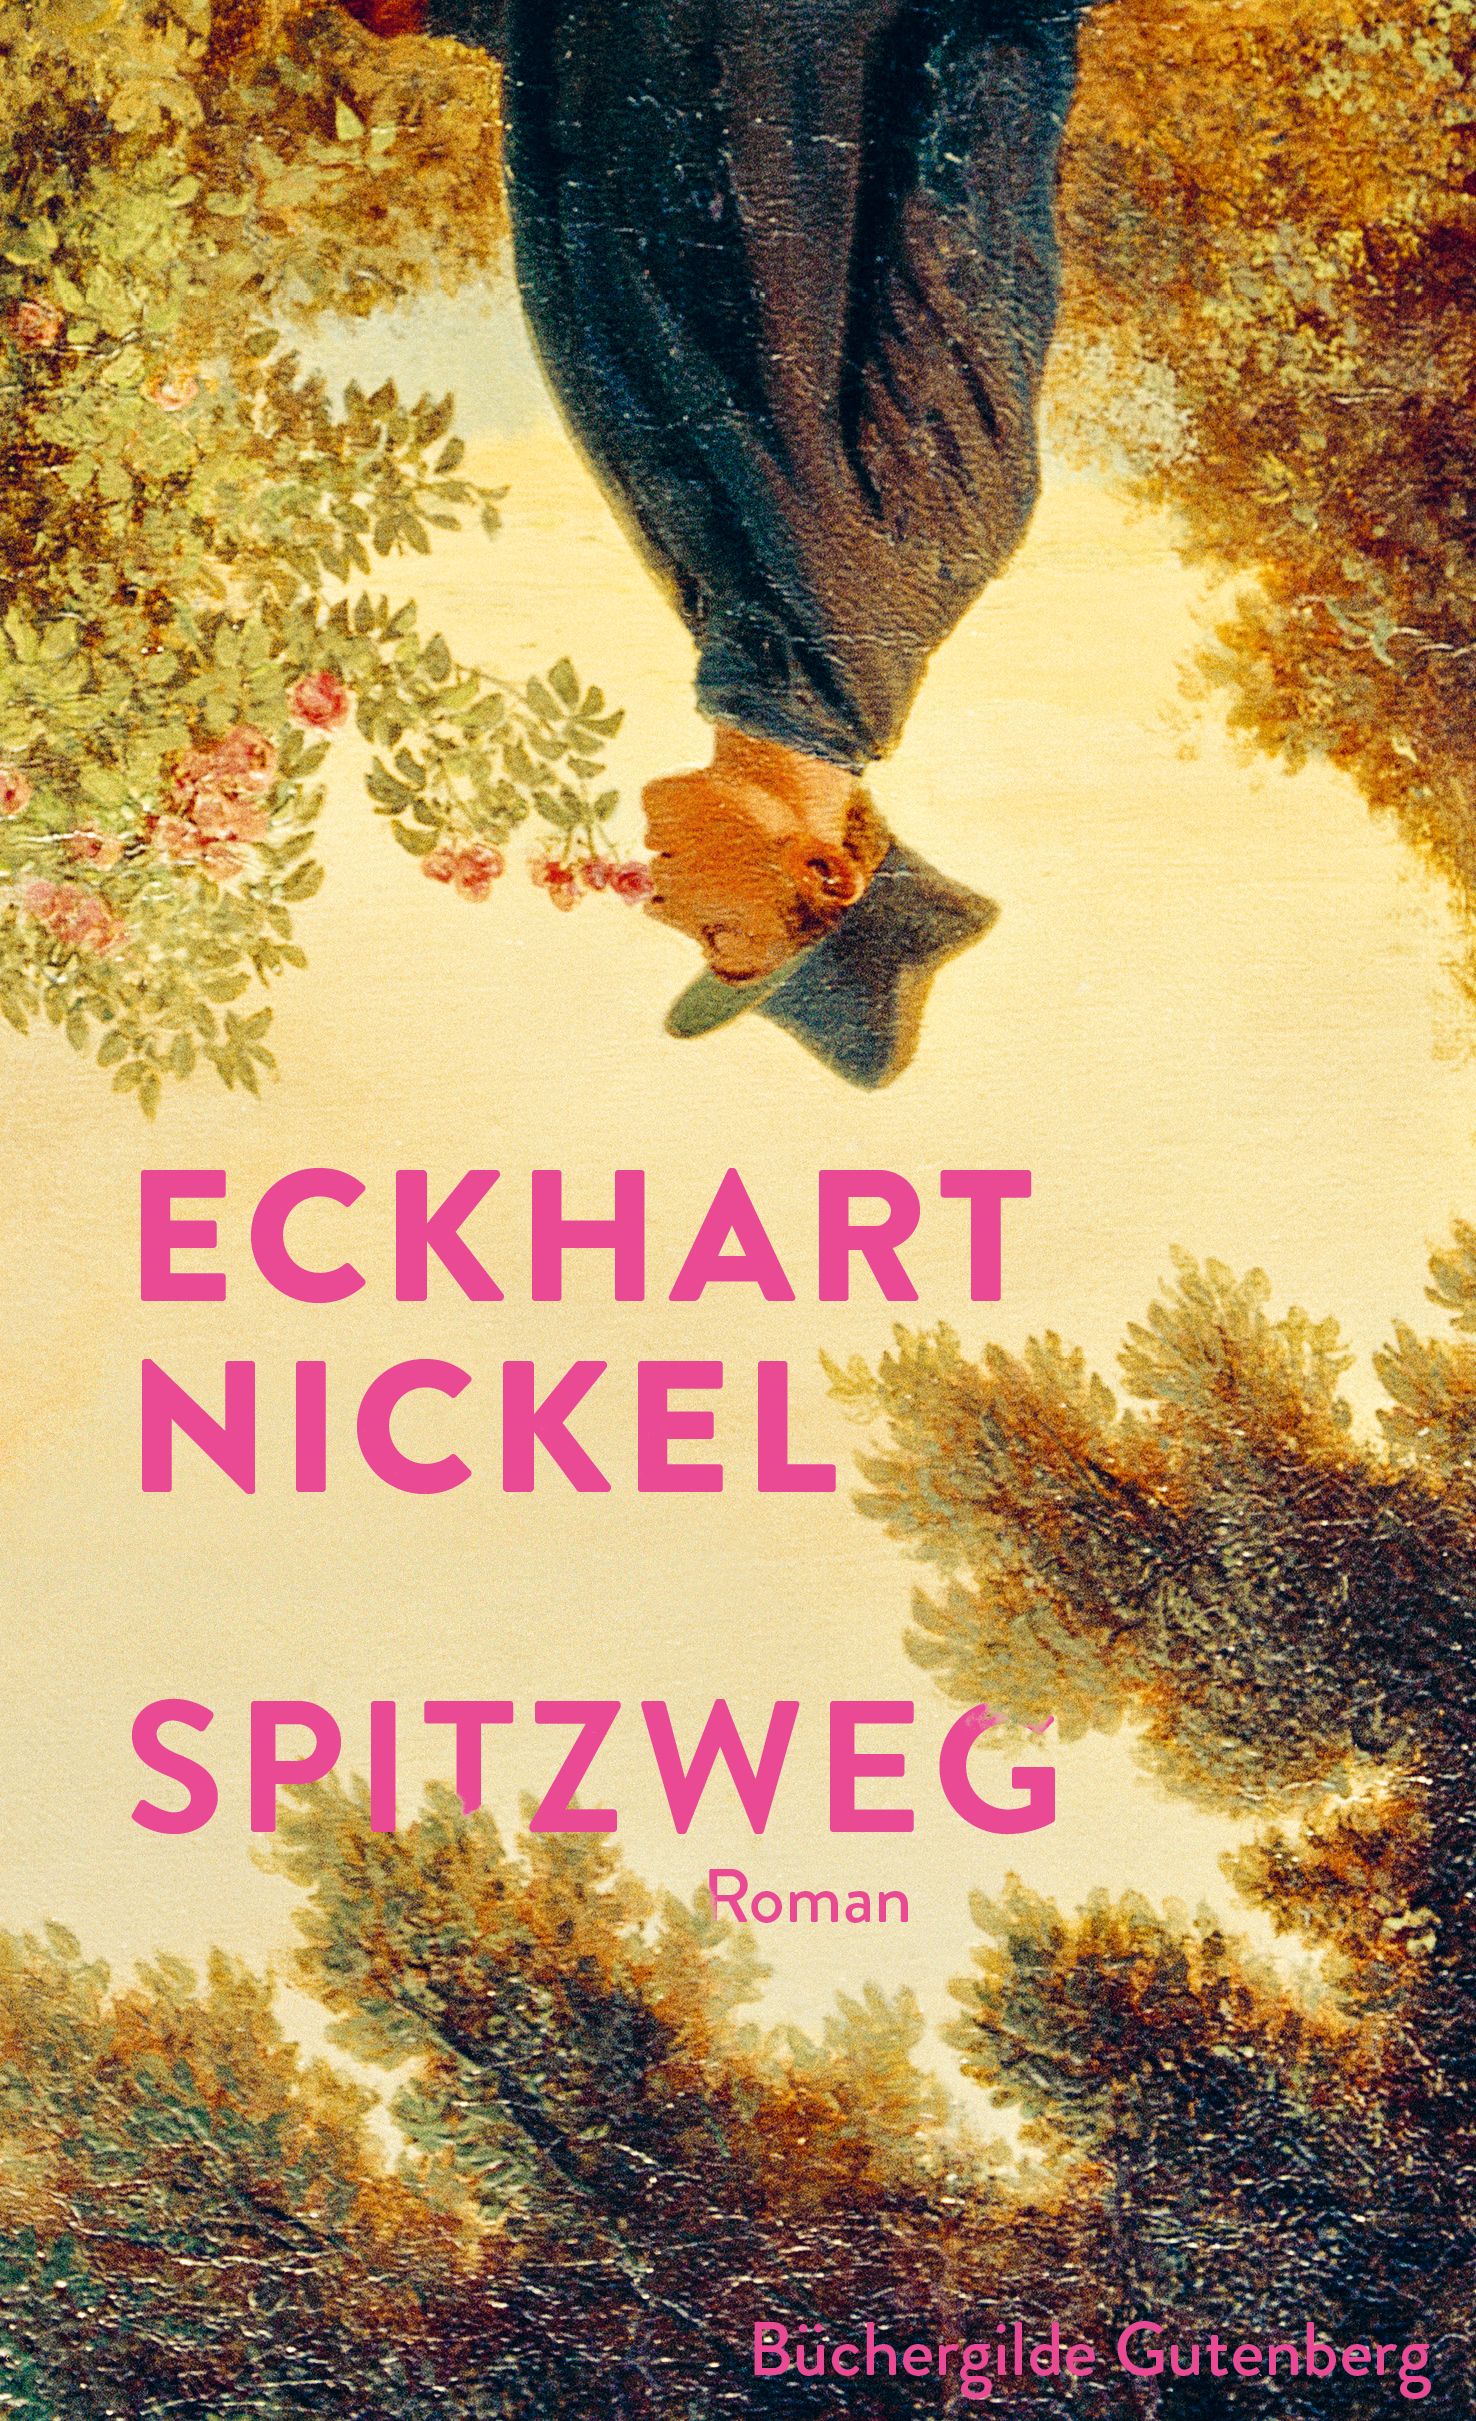 173999_Nickel_Spitzweg_FR_01.jpg